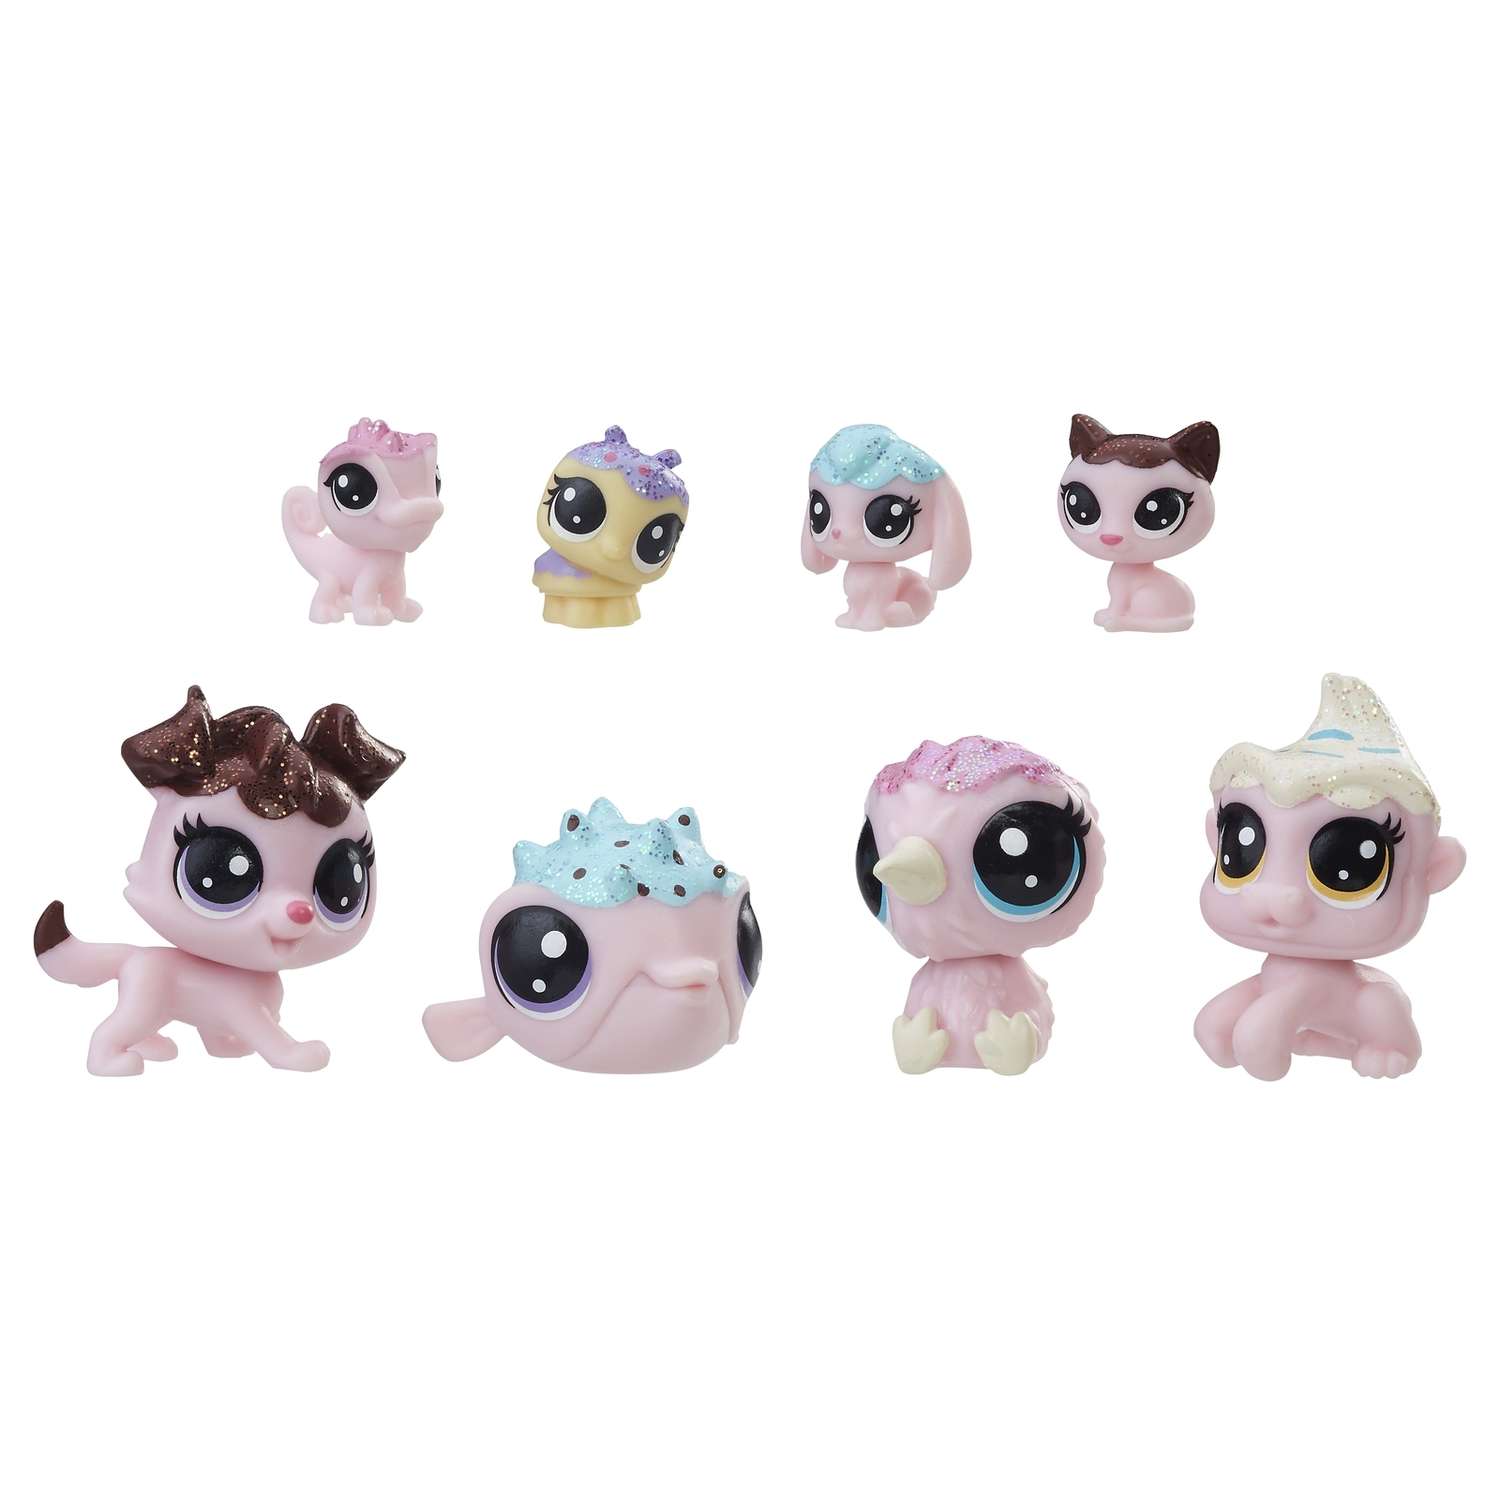 Набор игрушек Littlest Pet Shop 8 зефирных Петов в ассортименте - фото 2